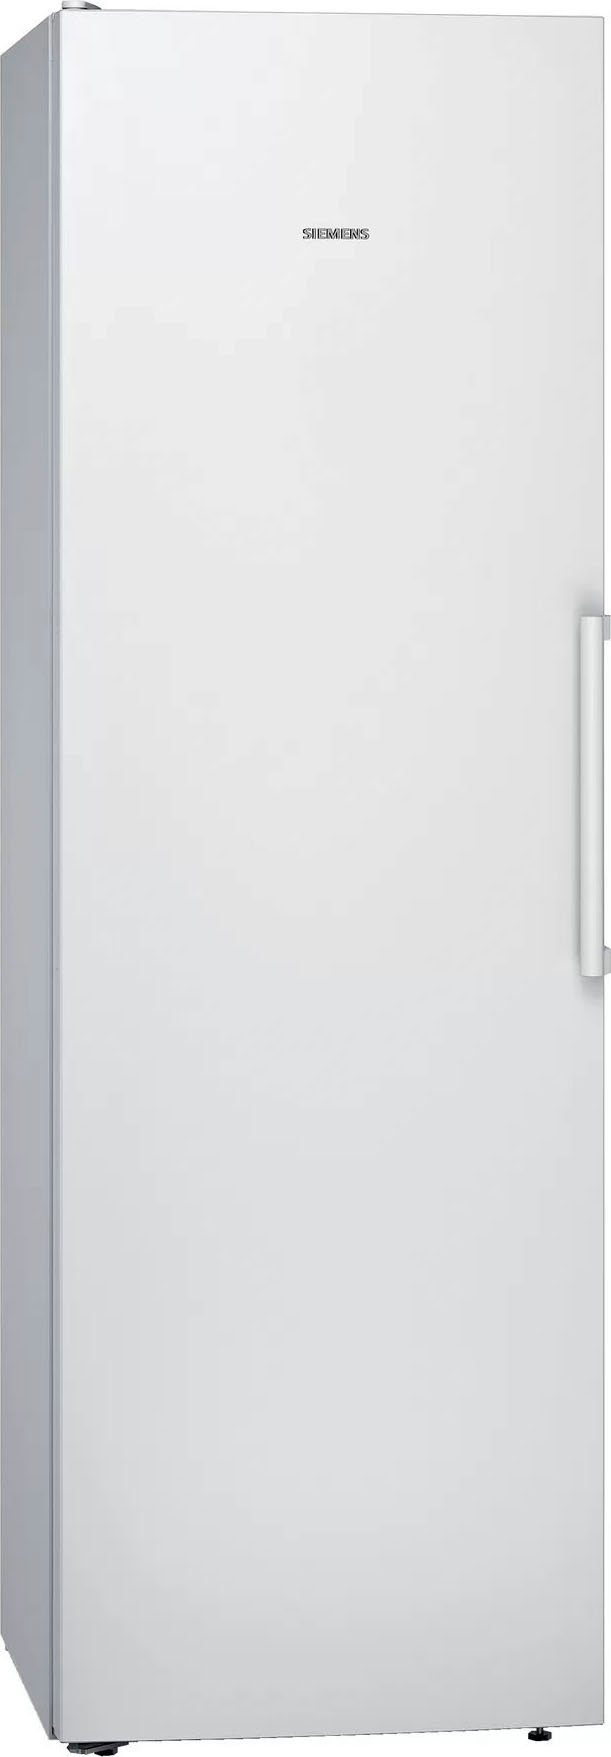 SIEMENS Kühlschrank iQ300 KS36VVWEP, 60 cm cm hoch, breit, Gesamt: Rauminhalt 186 Liter 346